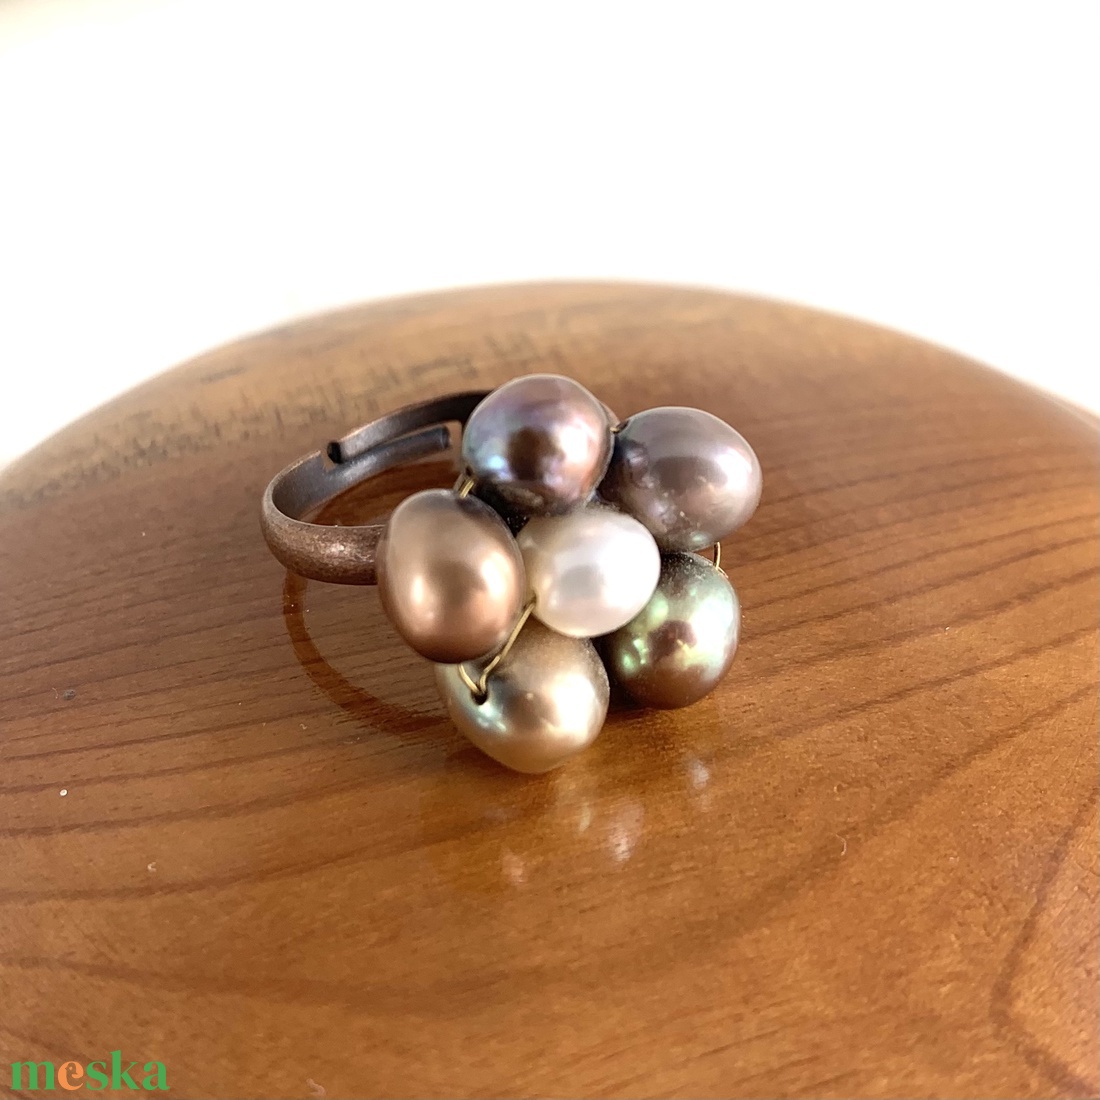 Igazgyöngy állítható méretű gyűrű, gyöngy virág motívumos univerzális méretű gyűrű, barna igazgyöngy gyűrű - ékszer - gyűrű - gyöngyös gyűrű - Meska.hu